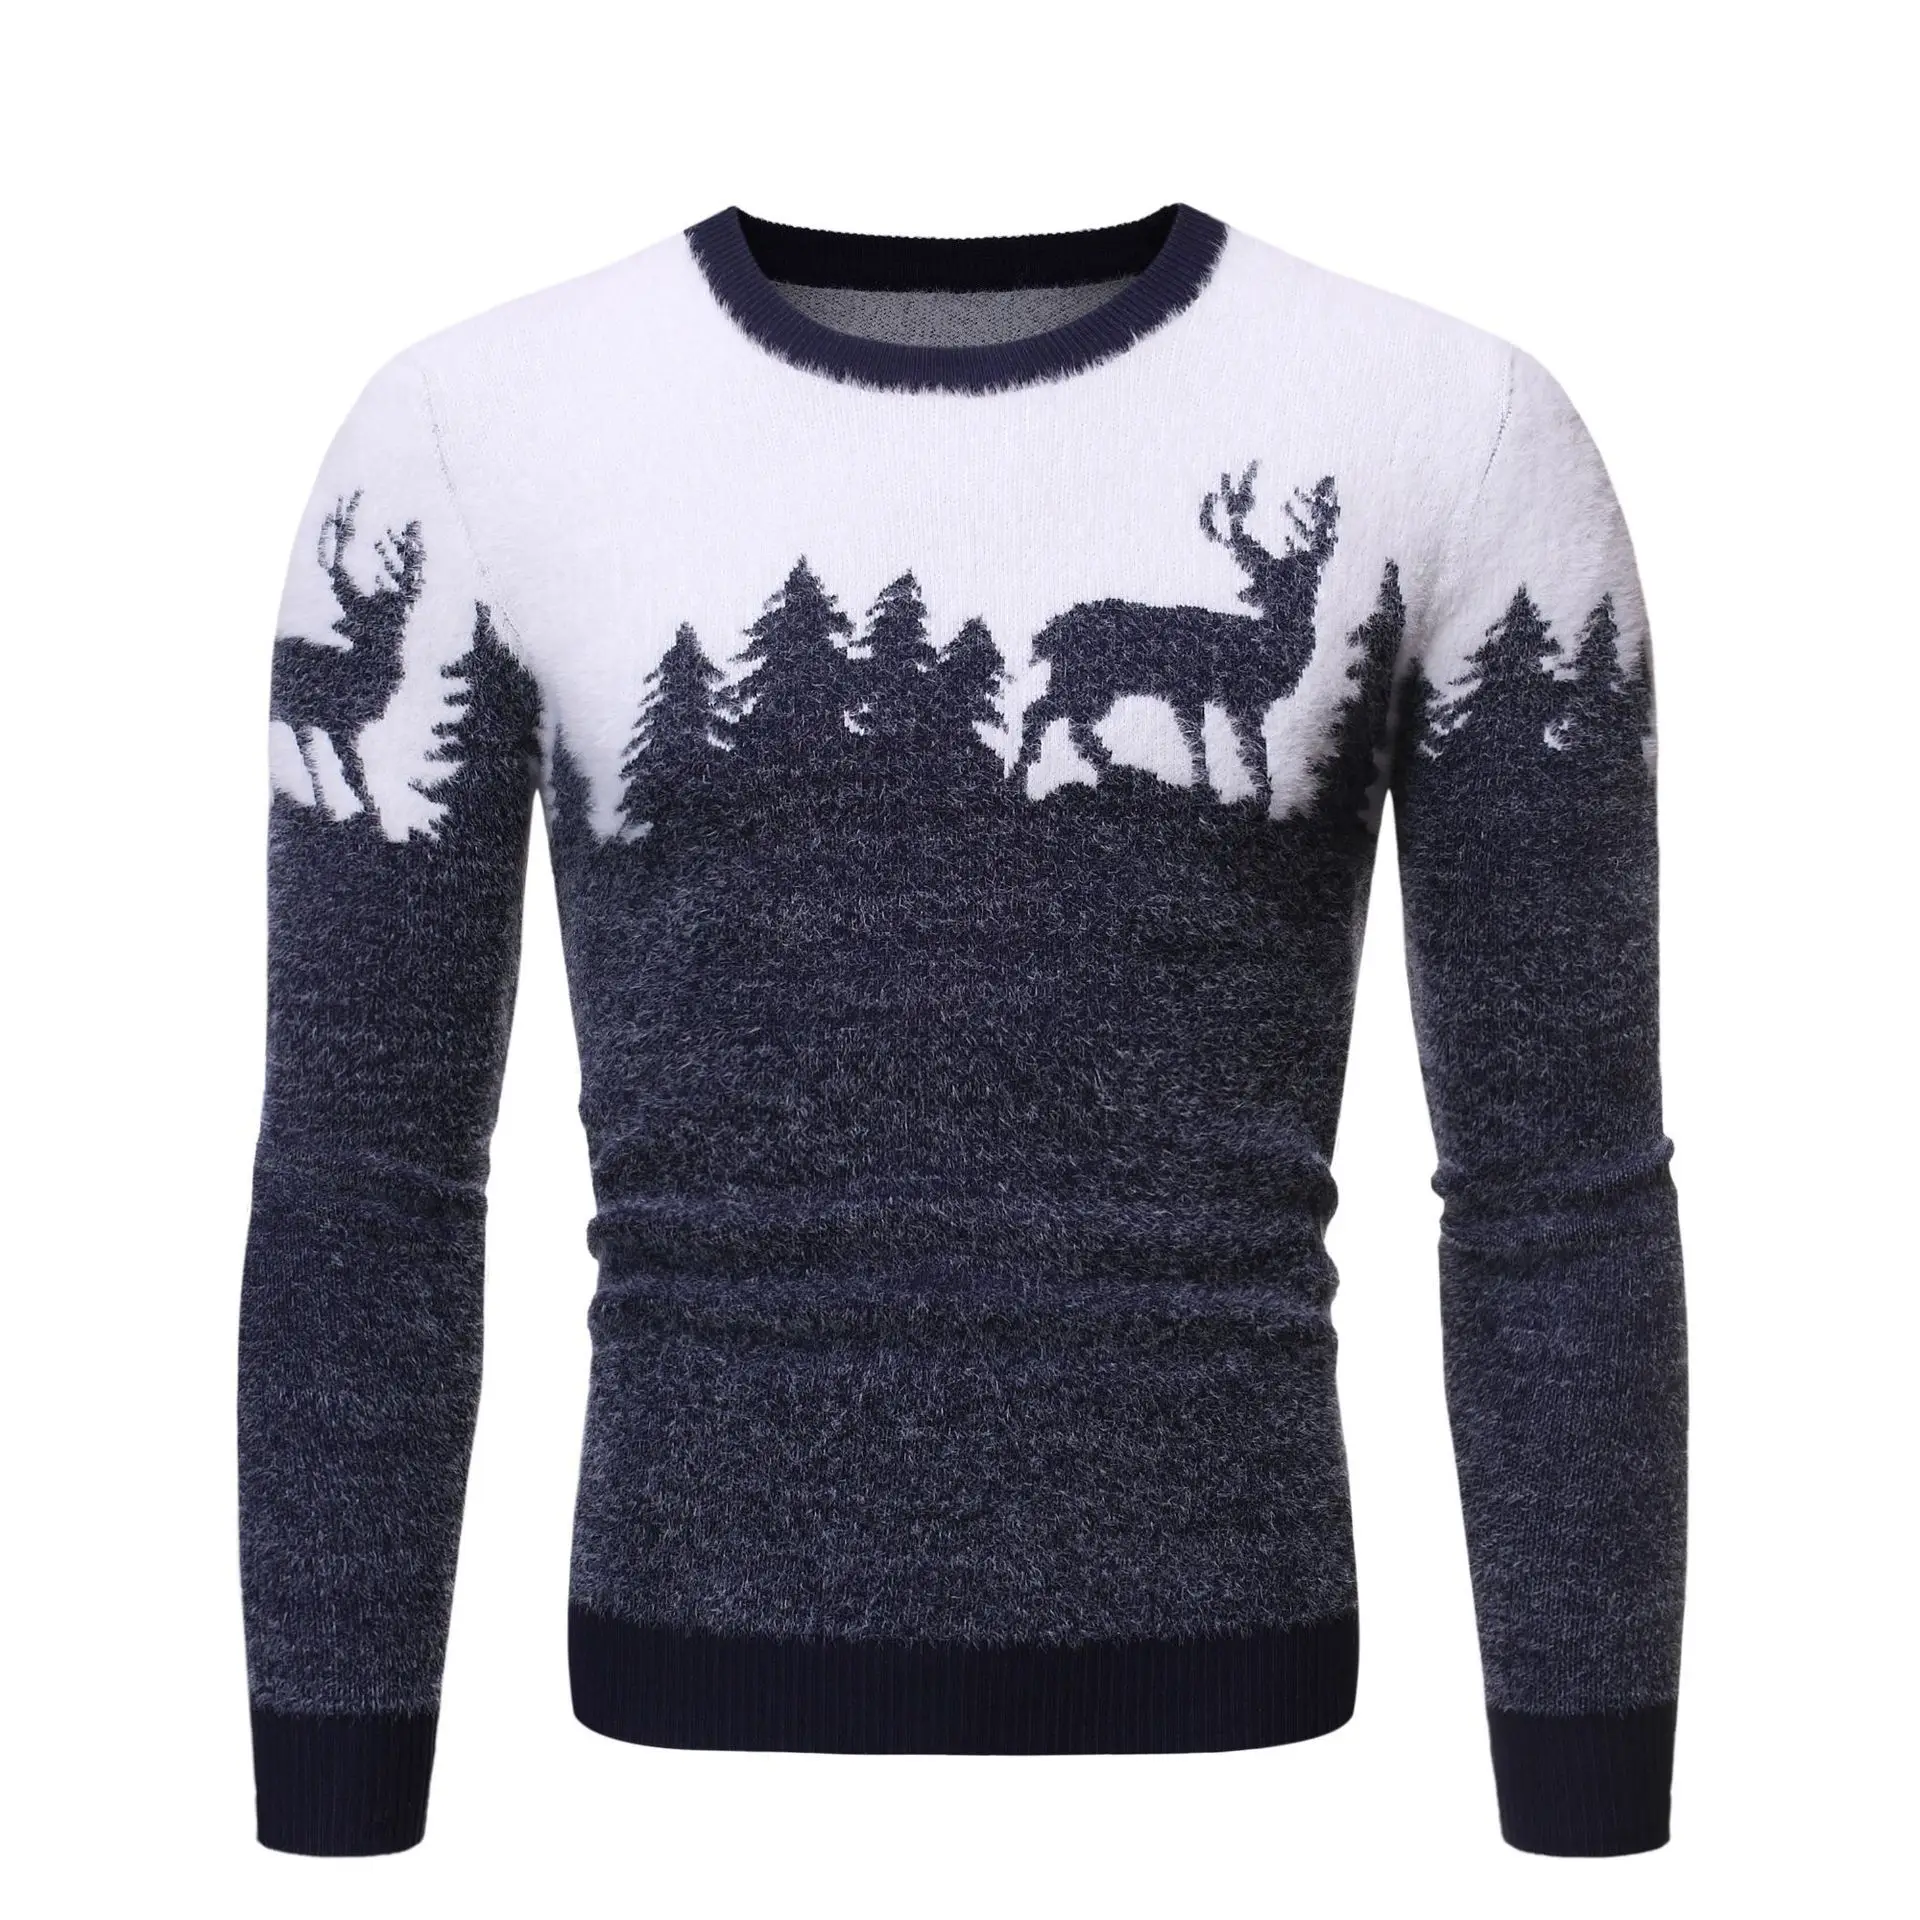 Caliente el estilo de otoño/invierno 2020 masculino de Navidad de los ciervos jersey suéter casual suéter de punto que adelgaza la tendencia masculina 2